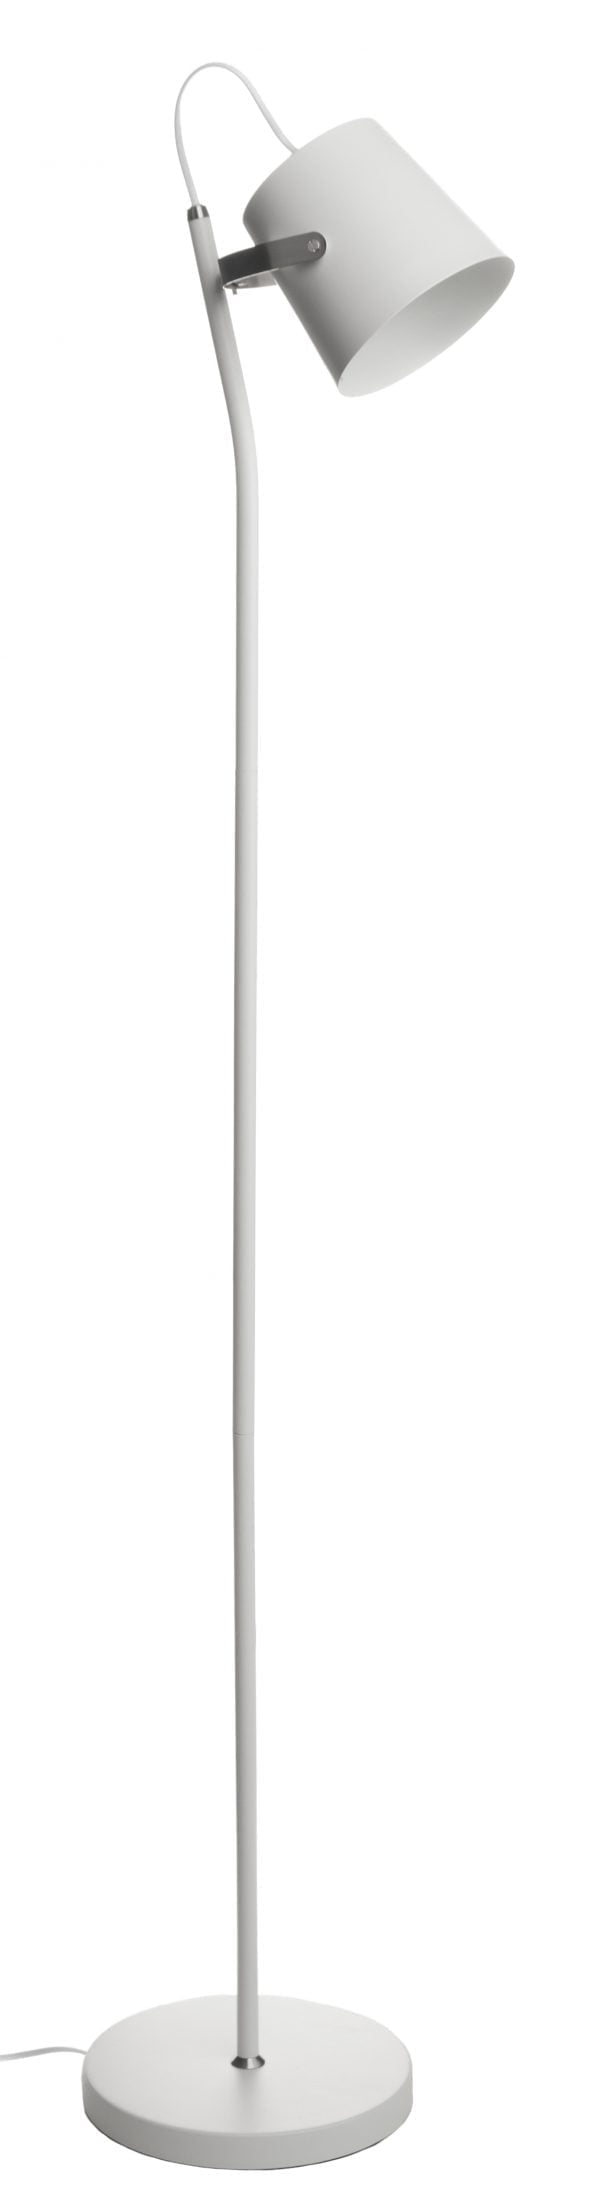 Valkoinen metallinen lattiavalaisin jossa on yksi valopiste